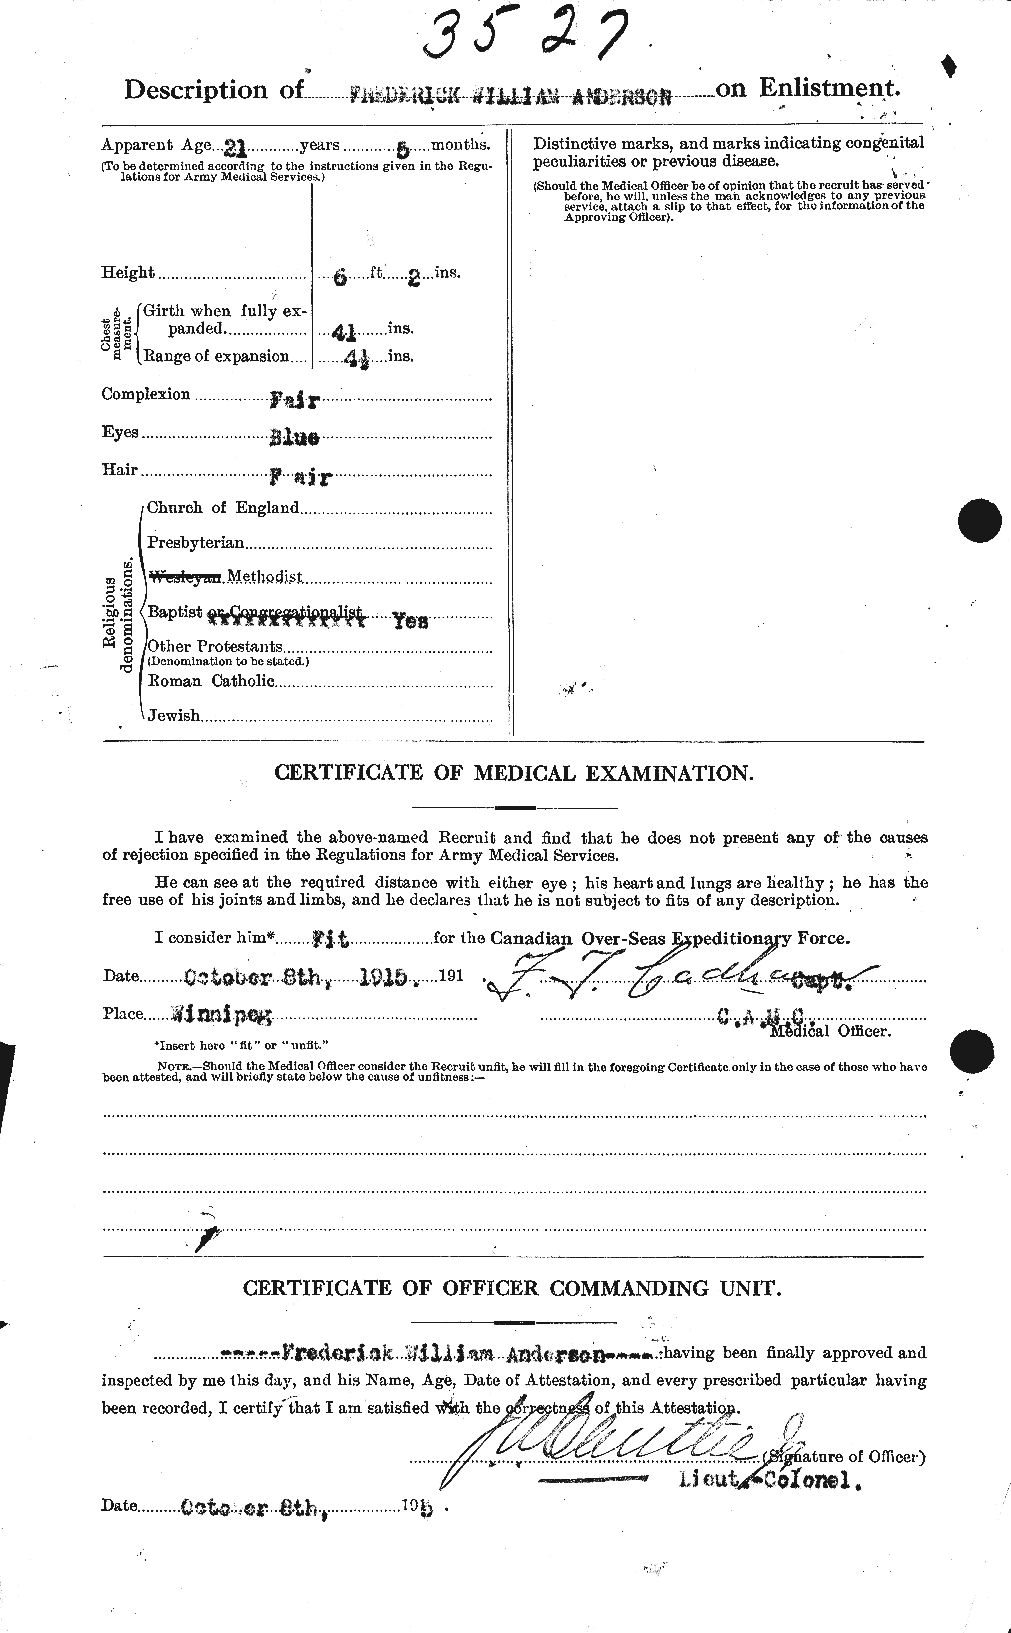 Dossiers du Personnel de la Première Guerre mondiale - CEC 209800b